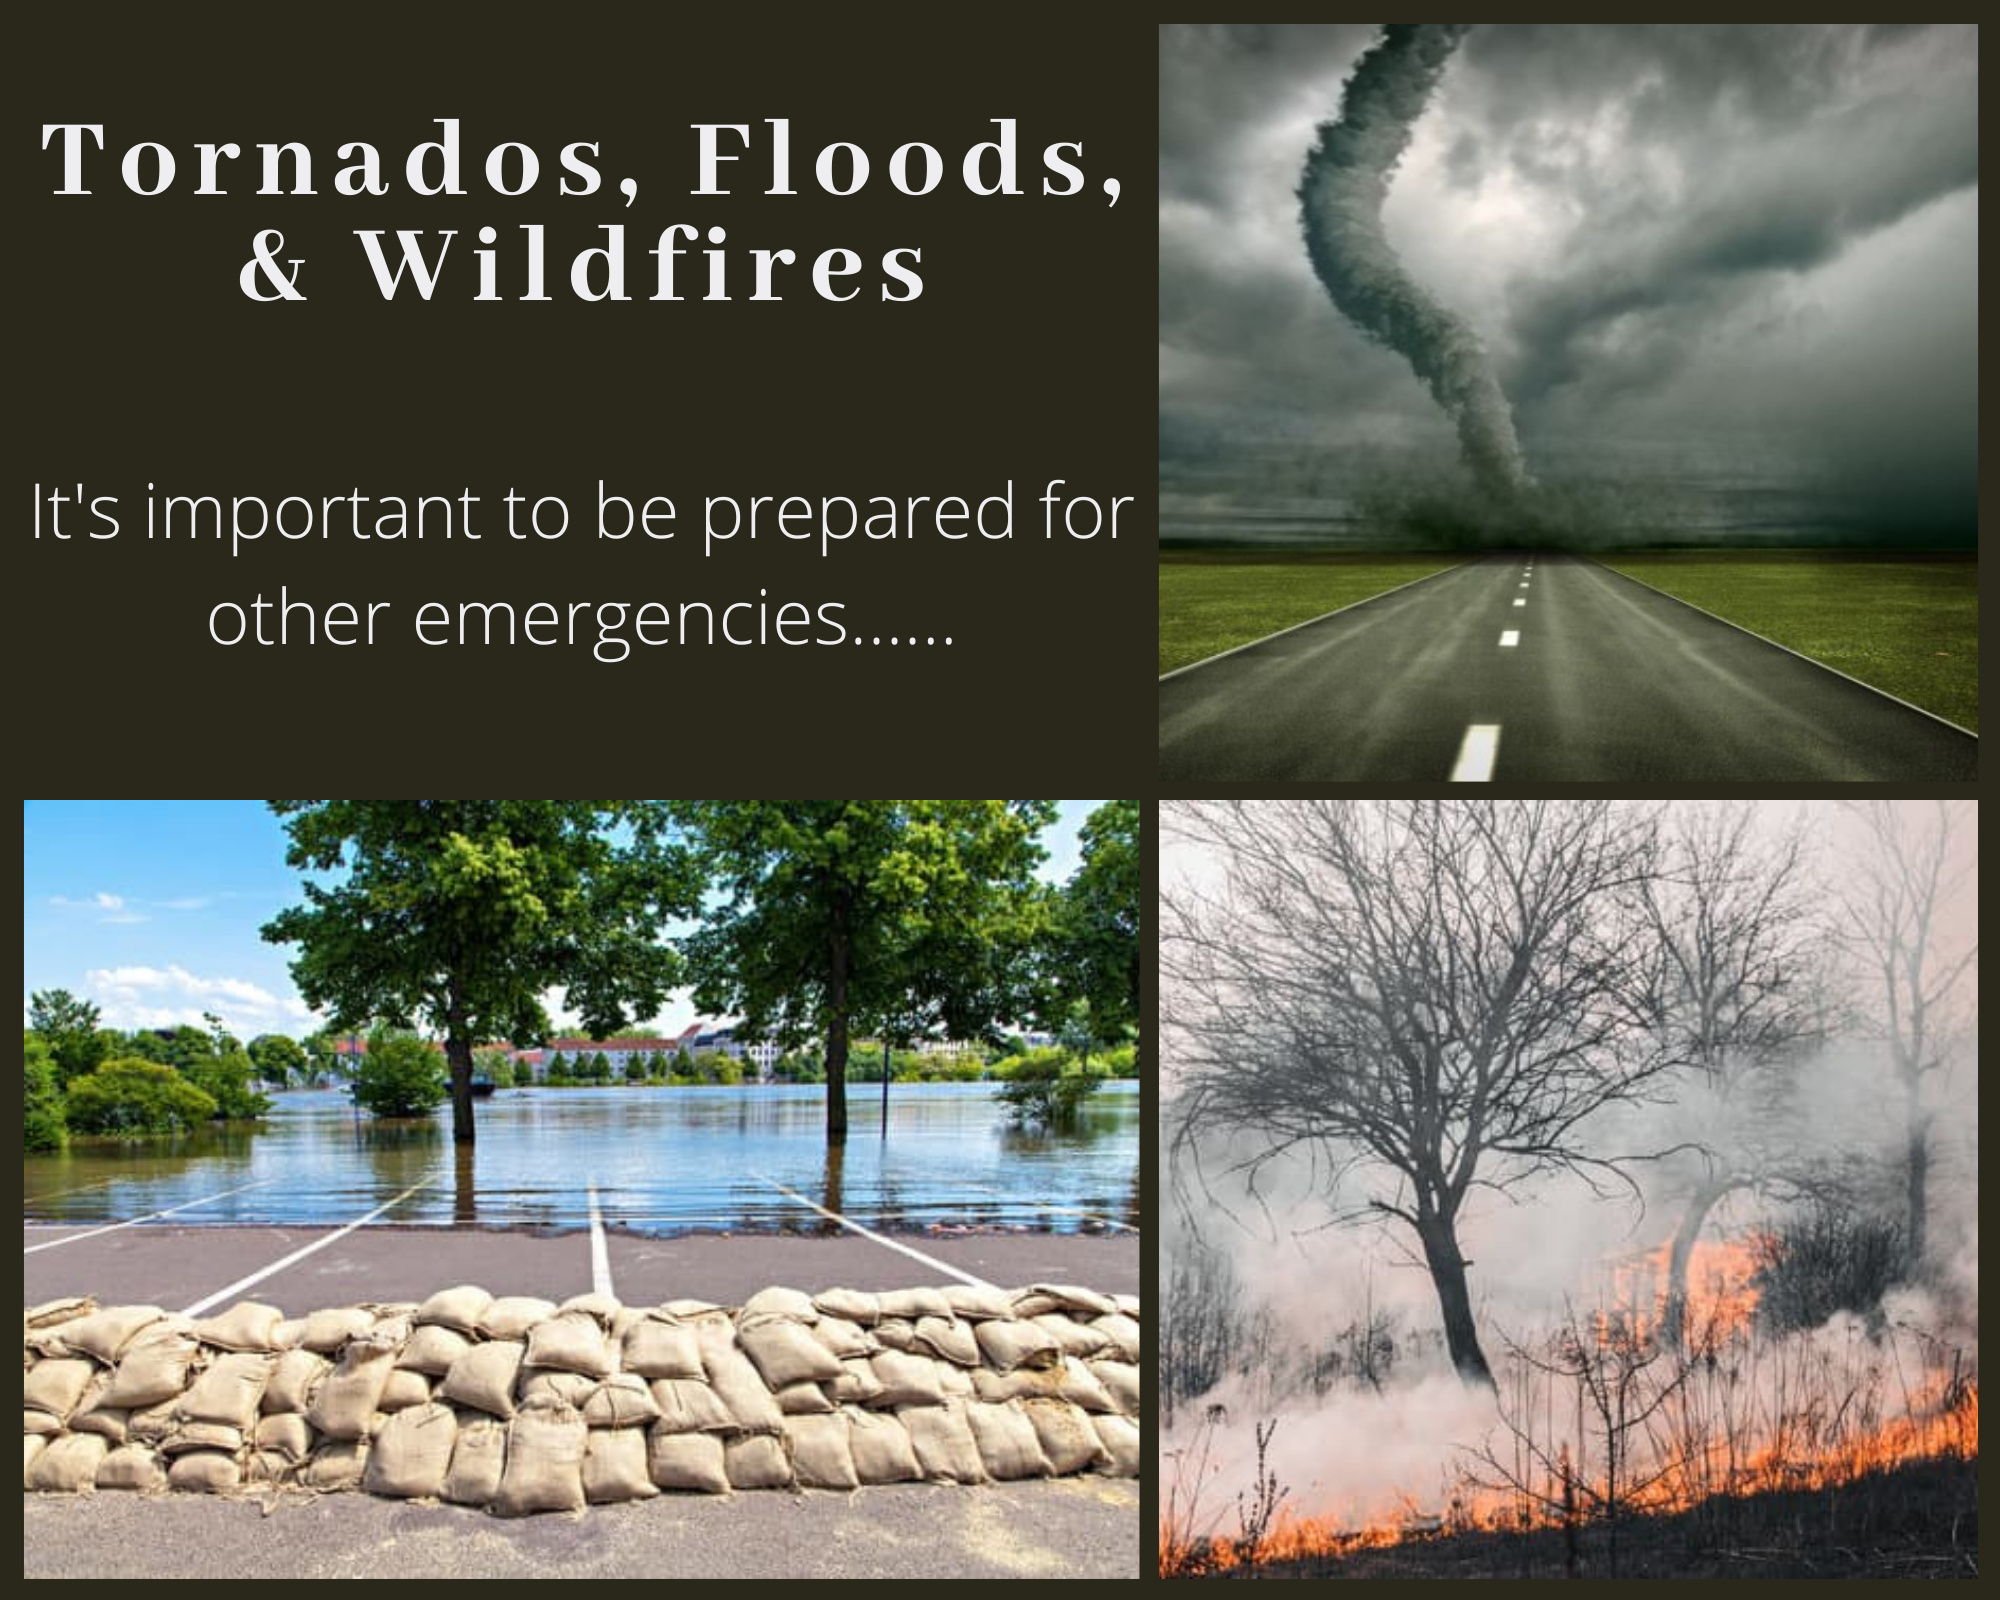 https://www.va.gov/img/2022-03/Tornados%2C%20Floods%2C%20%26%20Wildfires%20Collage.png